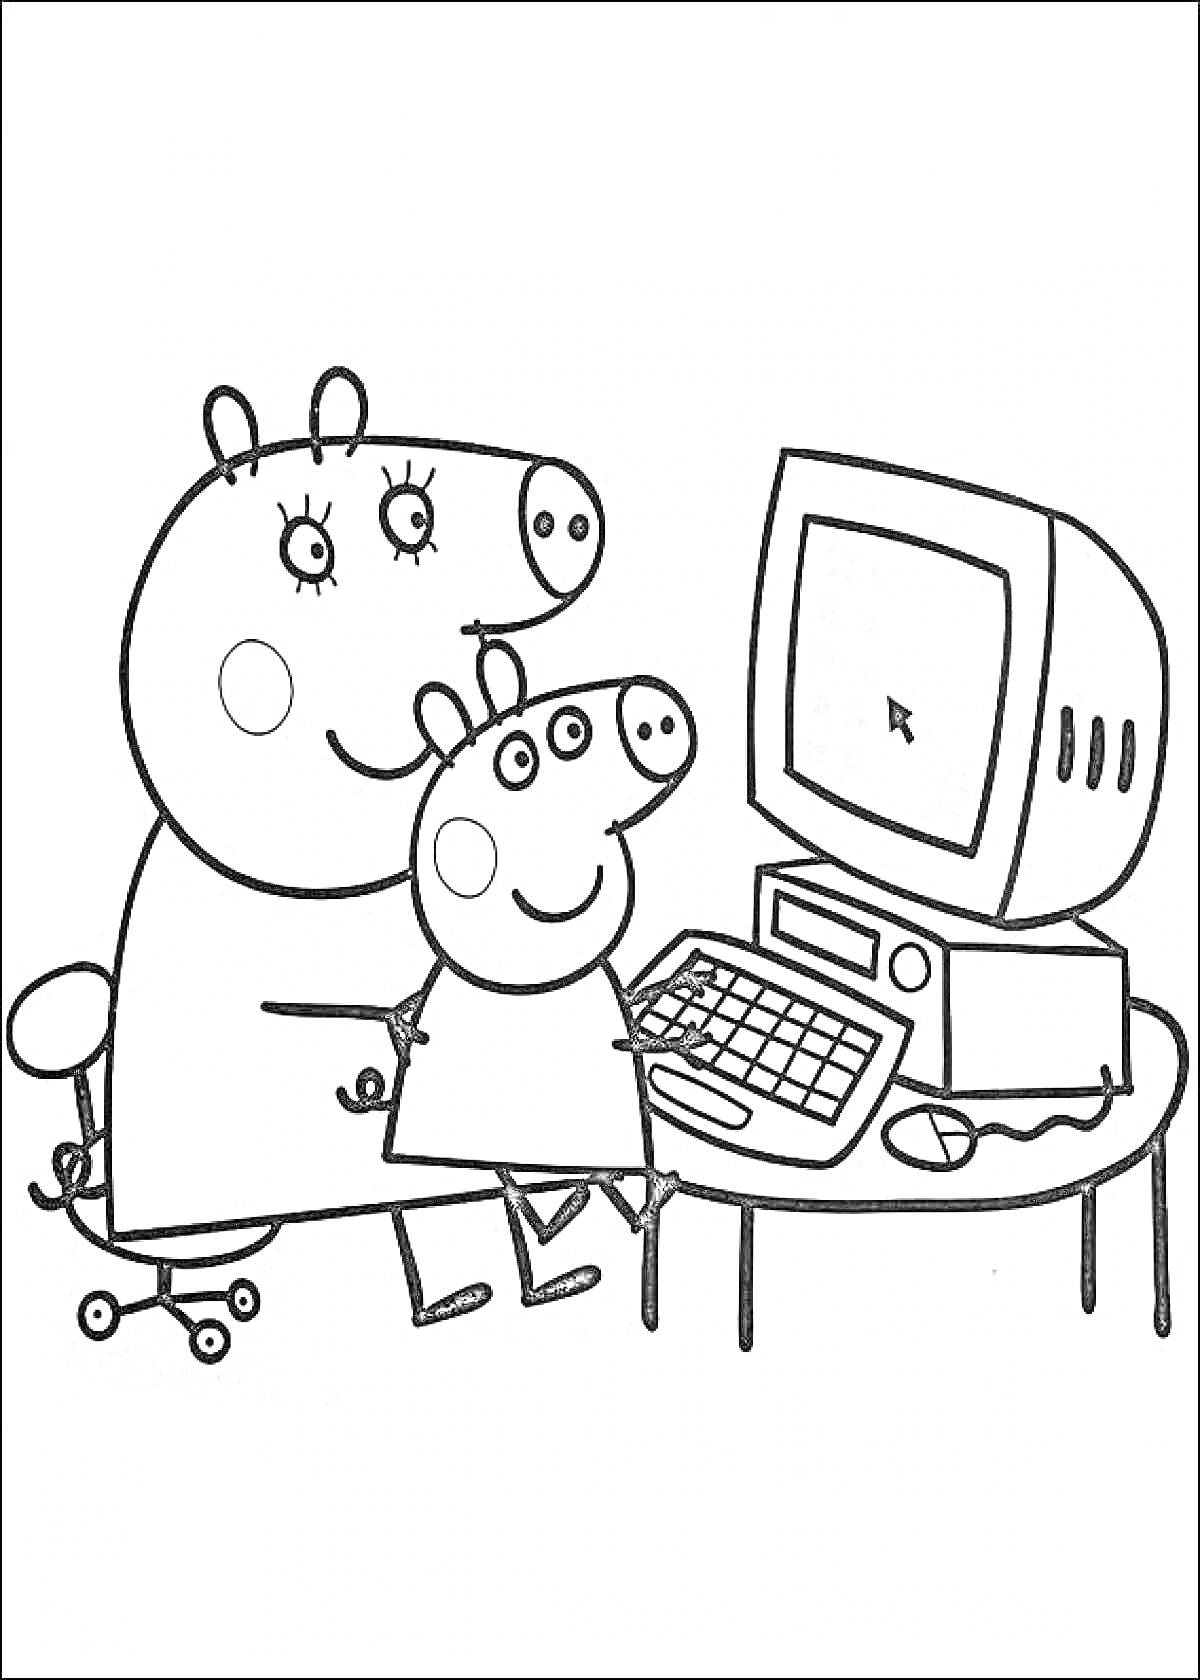 Свинка Пеппа и взрослый свин за столом с компьютером